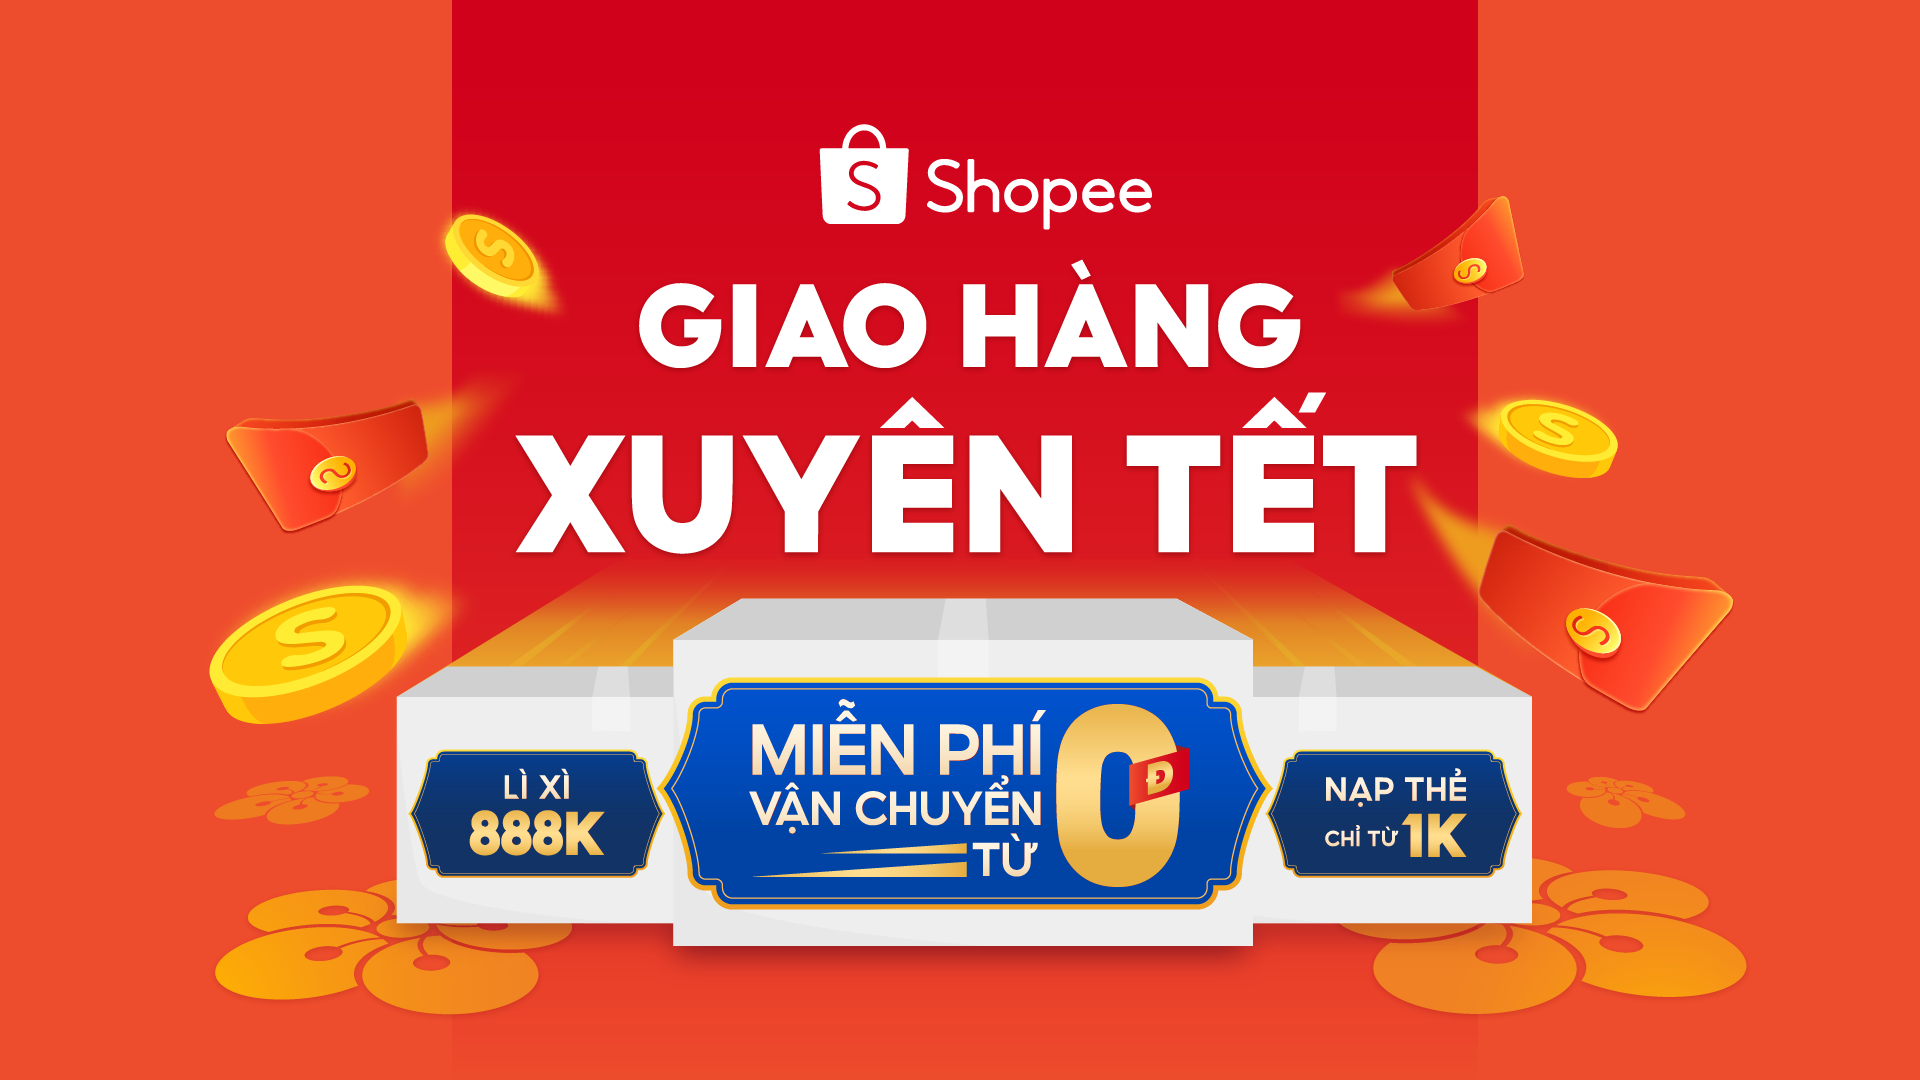 Chương trình “Shopee Tết Sale, Giao hàng xuyên Tết” kéo dài từ 31/1 đến 5/2 thổi bay những trở ngại mua sắm của dân văn phòng dịp cuối năm